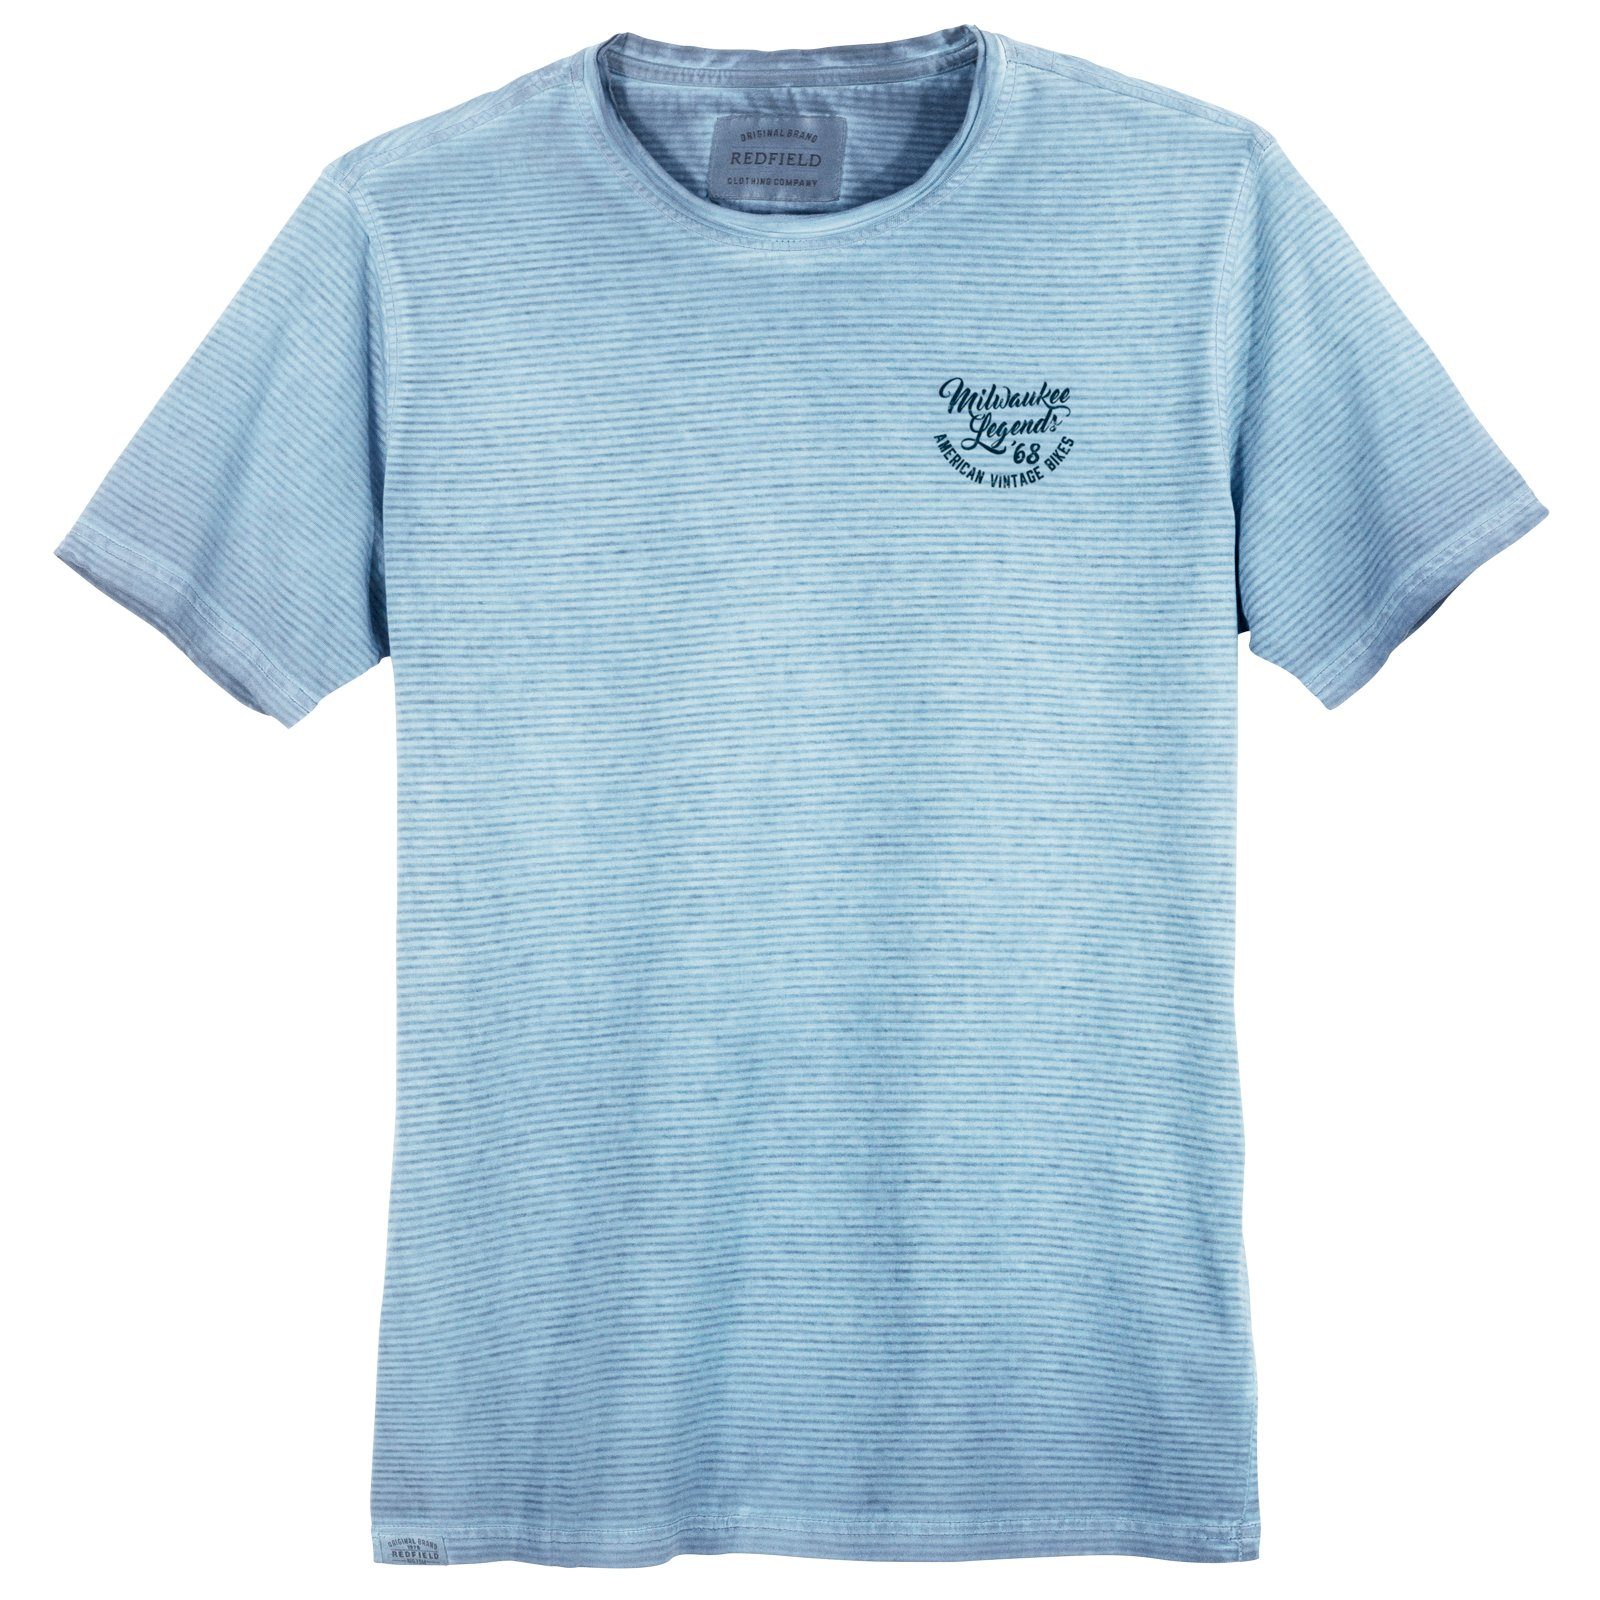 hellblau XXL Redfield redfield Print-Shirt geringelt Used T-Shirt modisches